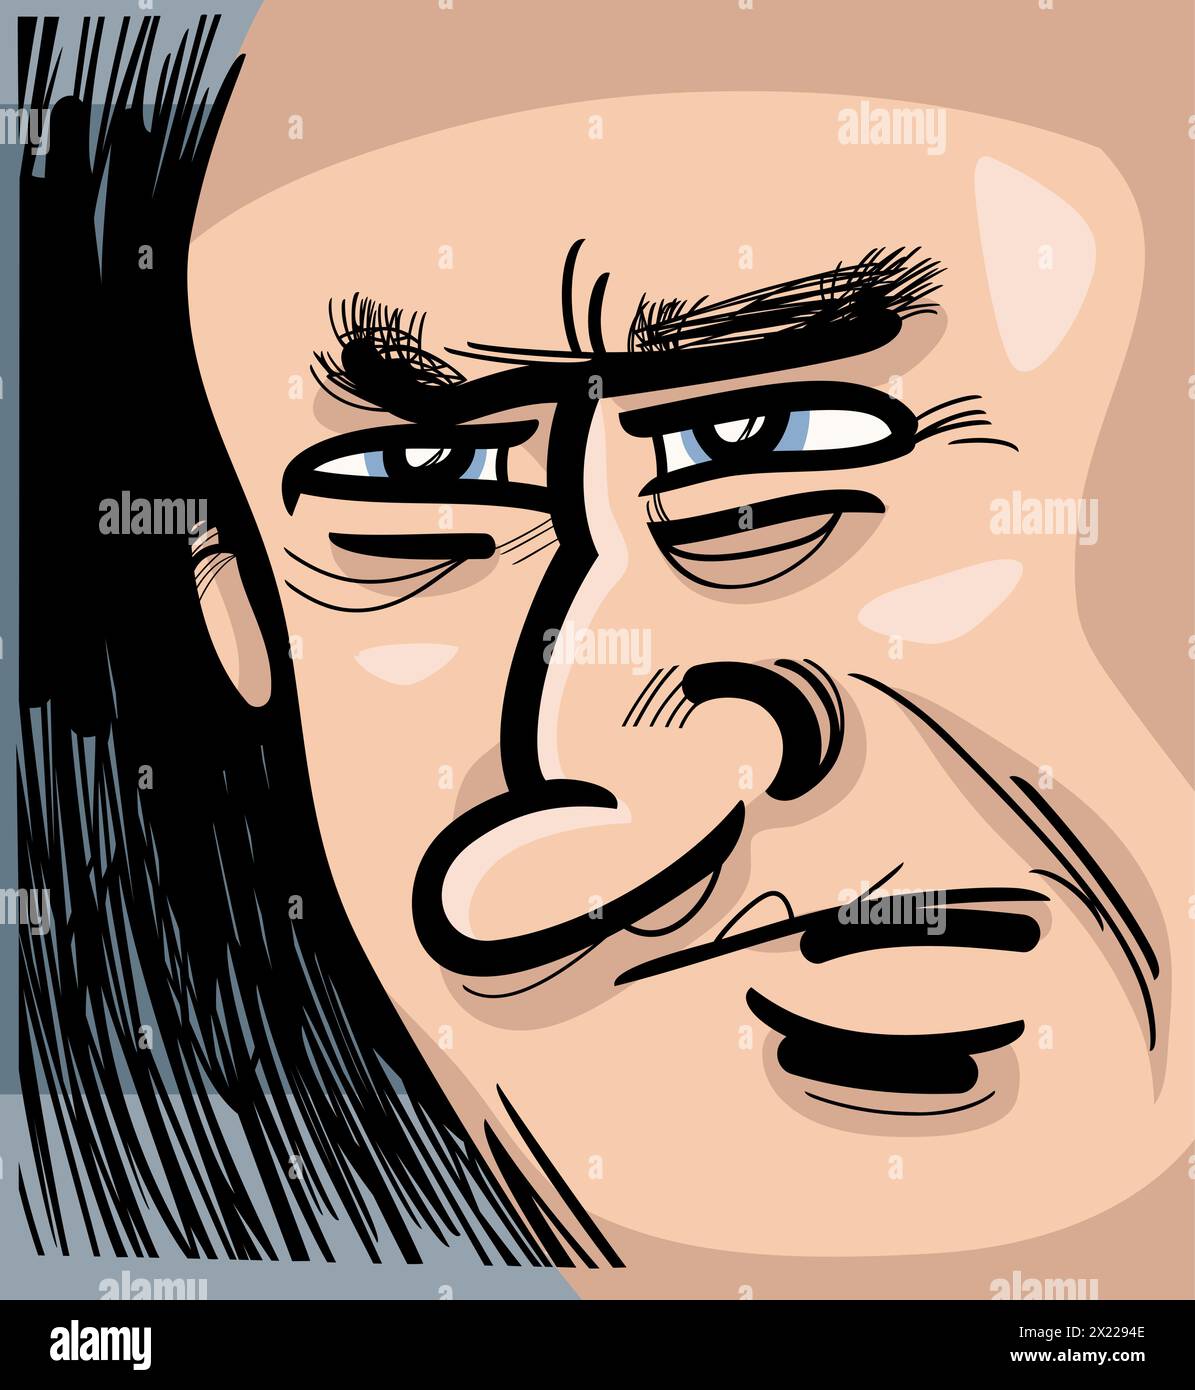 portrait de visage d'homme caricature esquisse dessin de dessin animé illustration Illustration de Vecteur